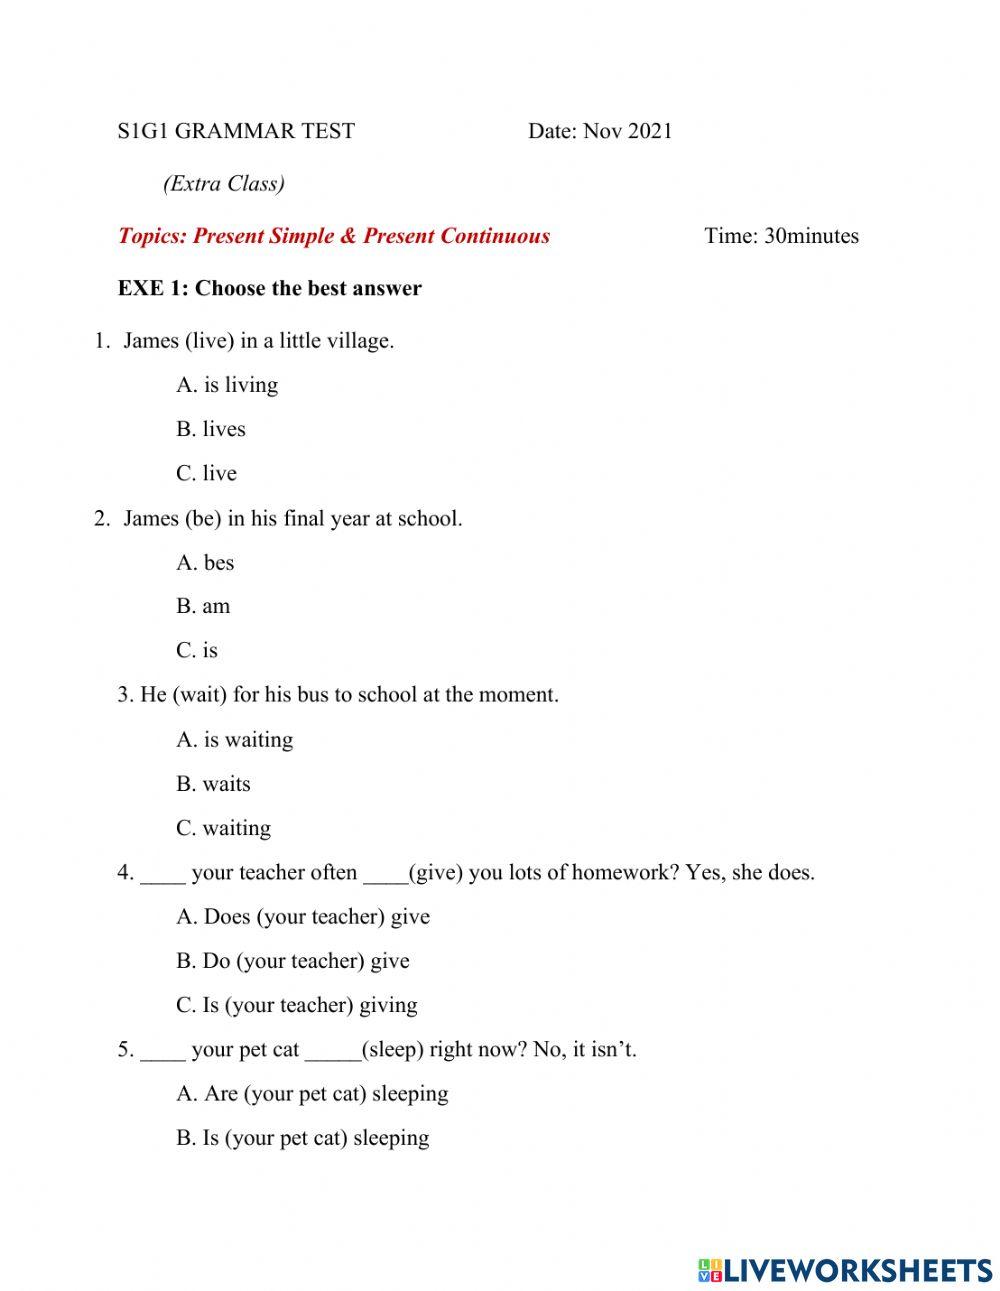 S1g1 grammar test